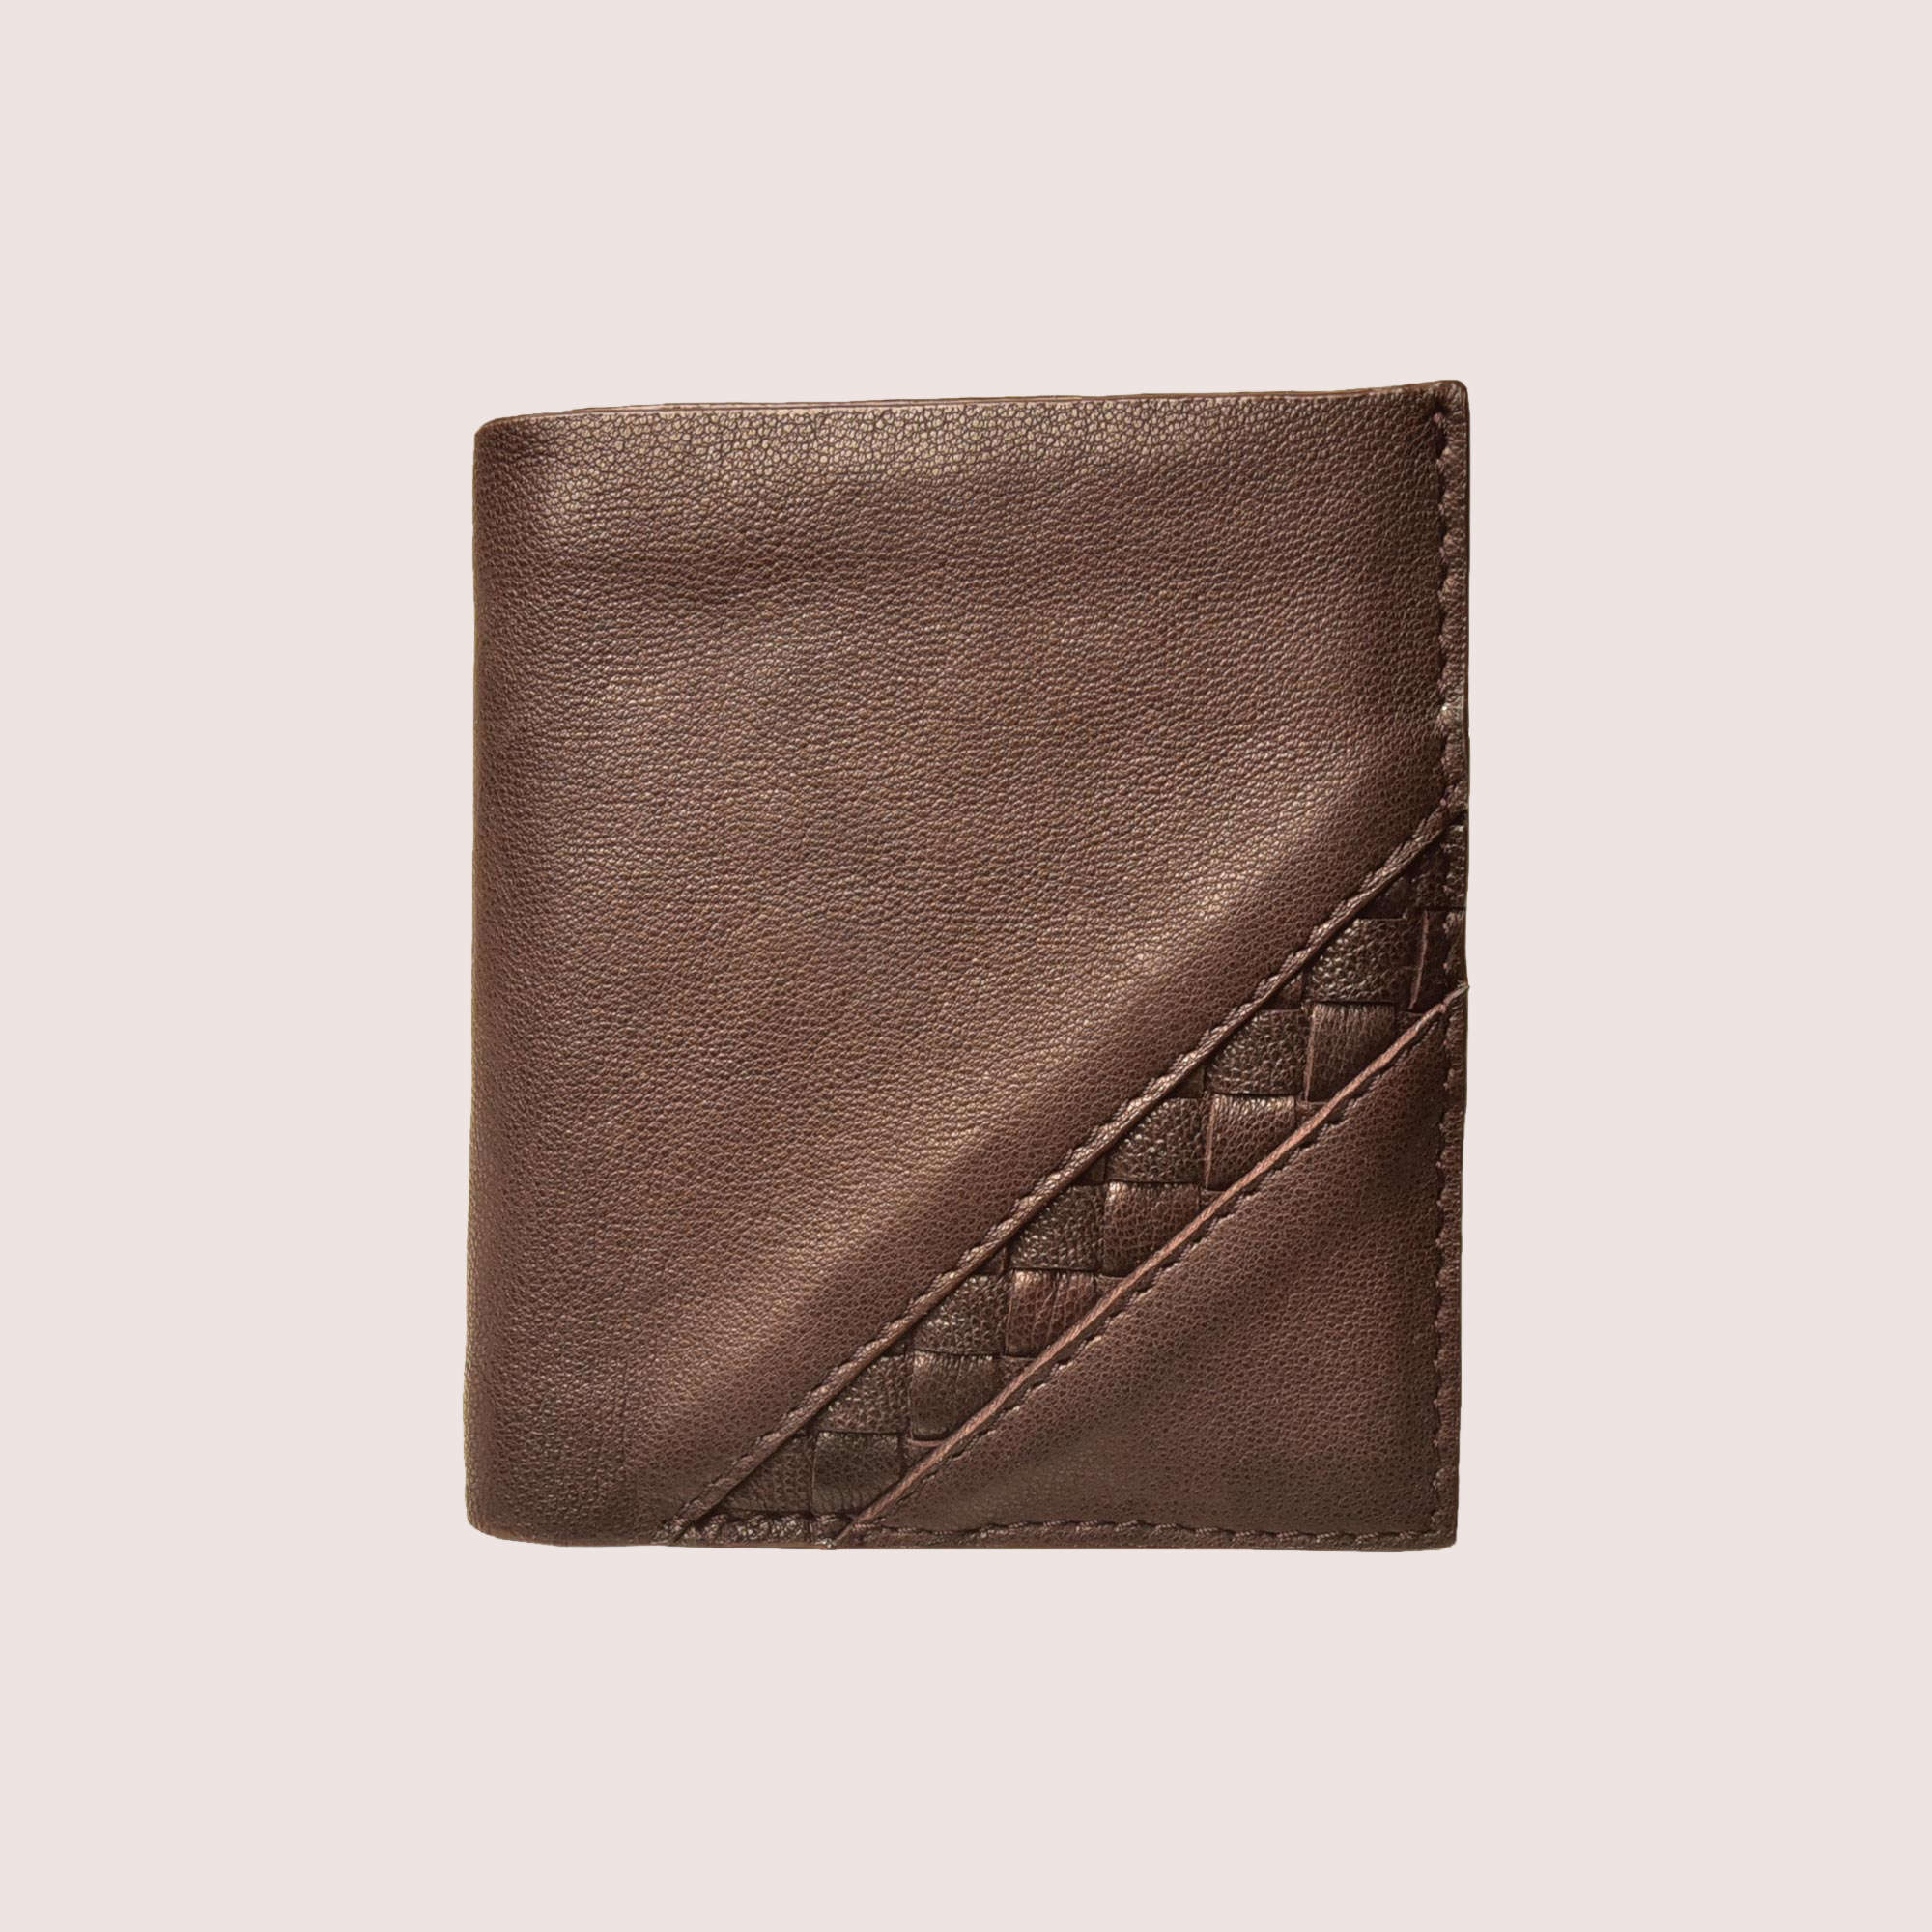 Mitchell Hand-Stitched Wallet